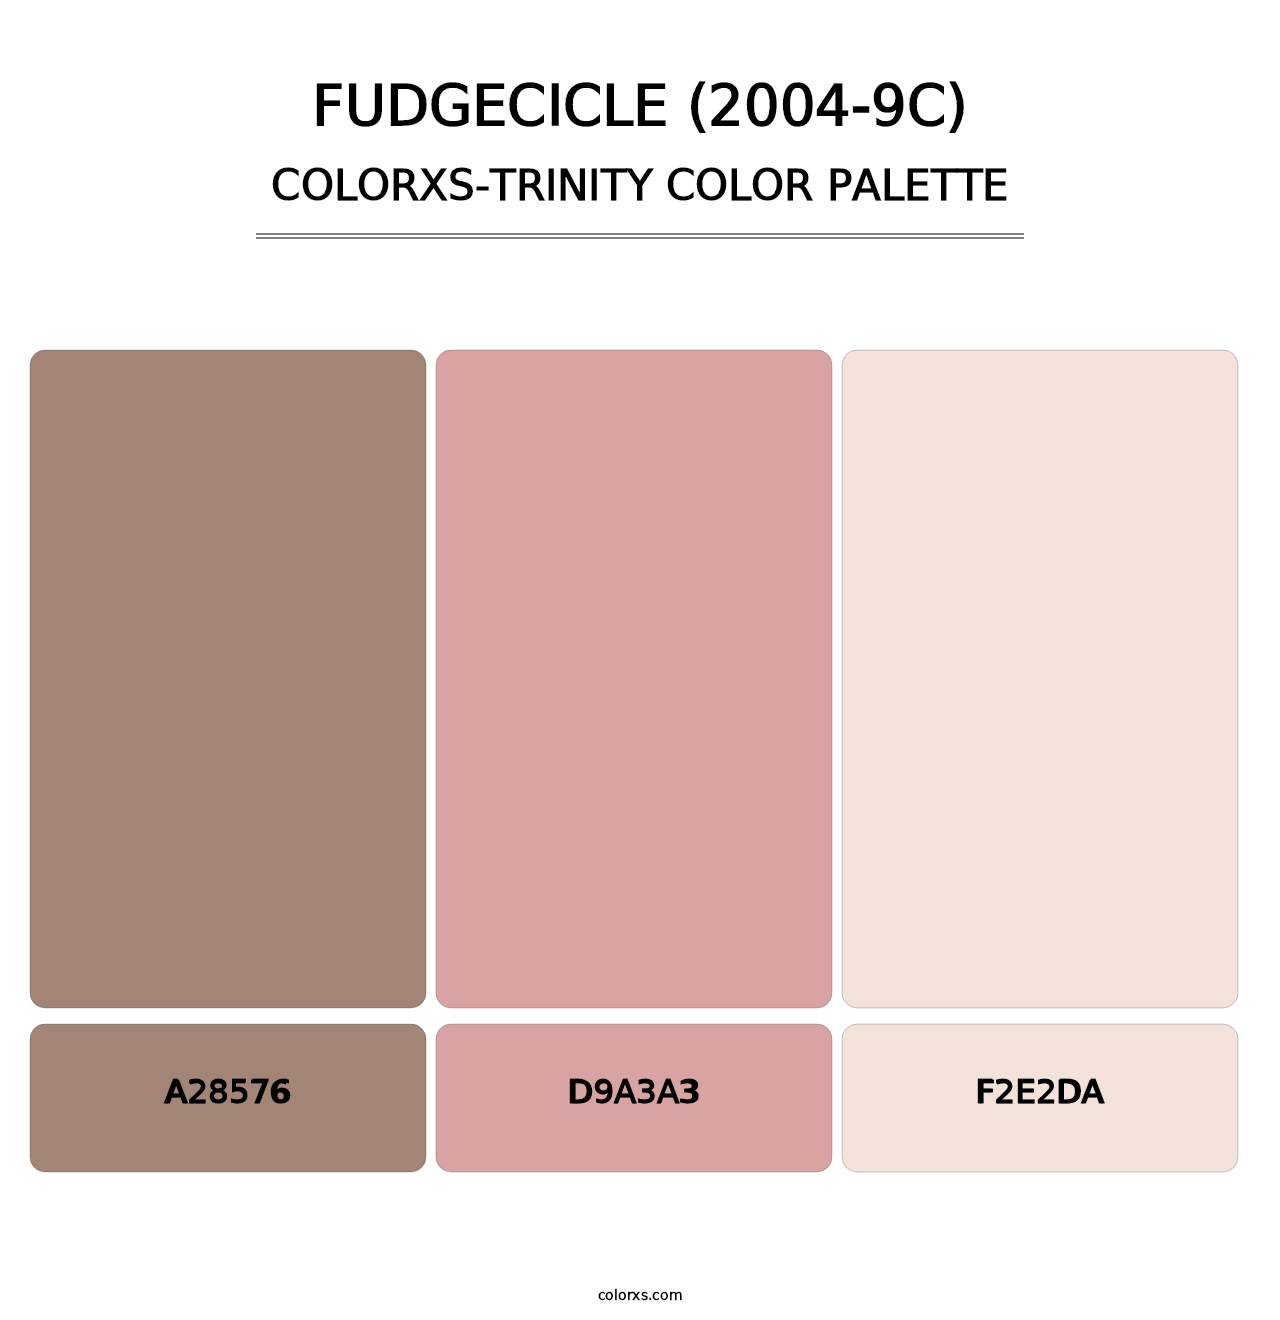 Fudgecicle (2004-9C) - Colorxs Trinity Palette